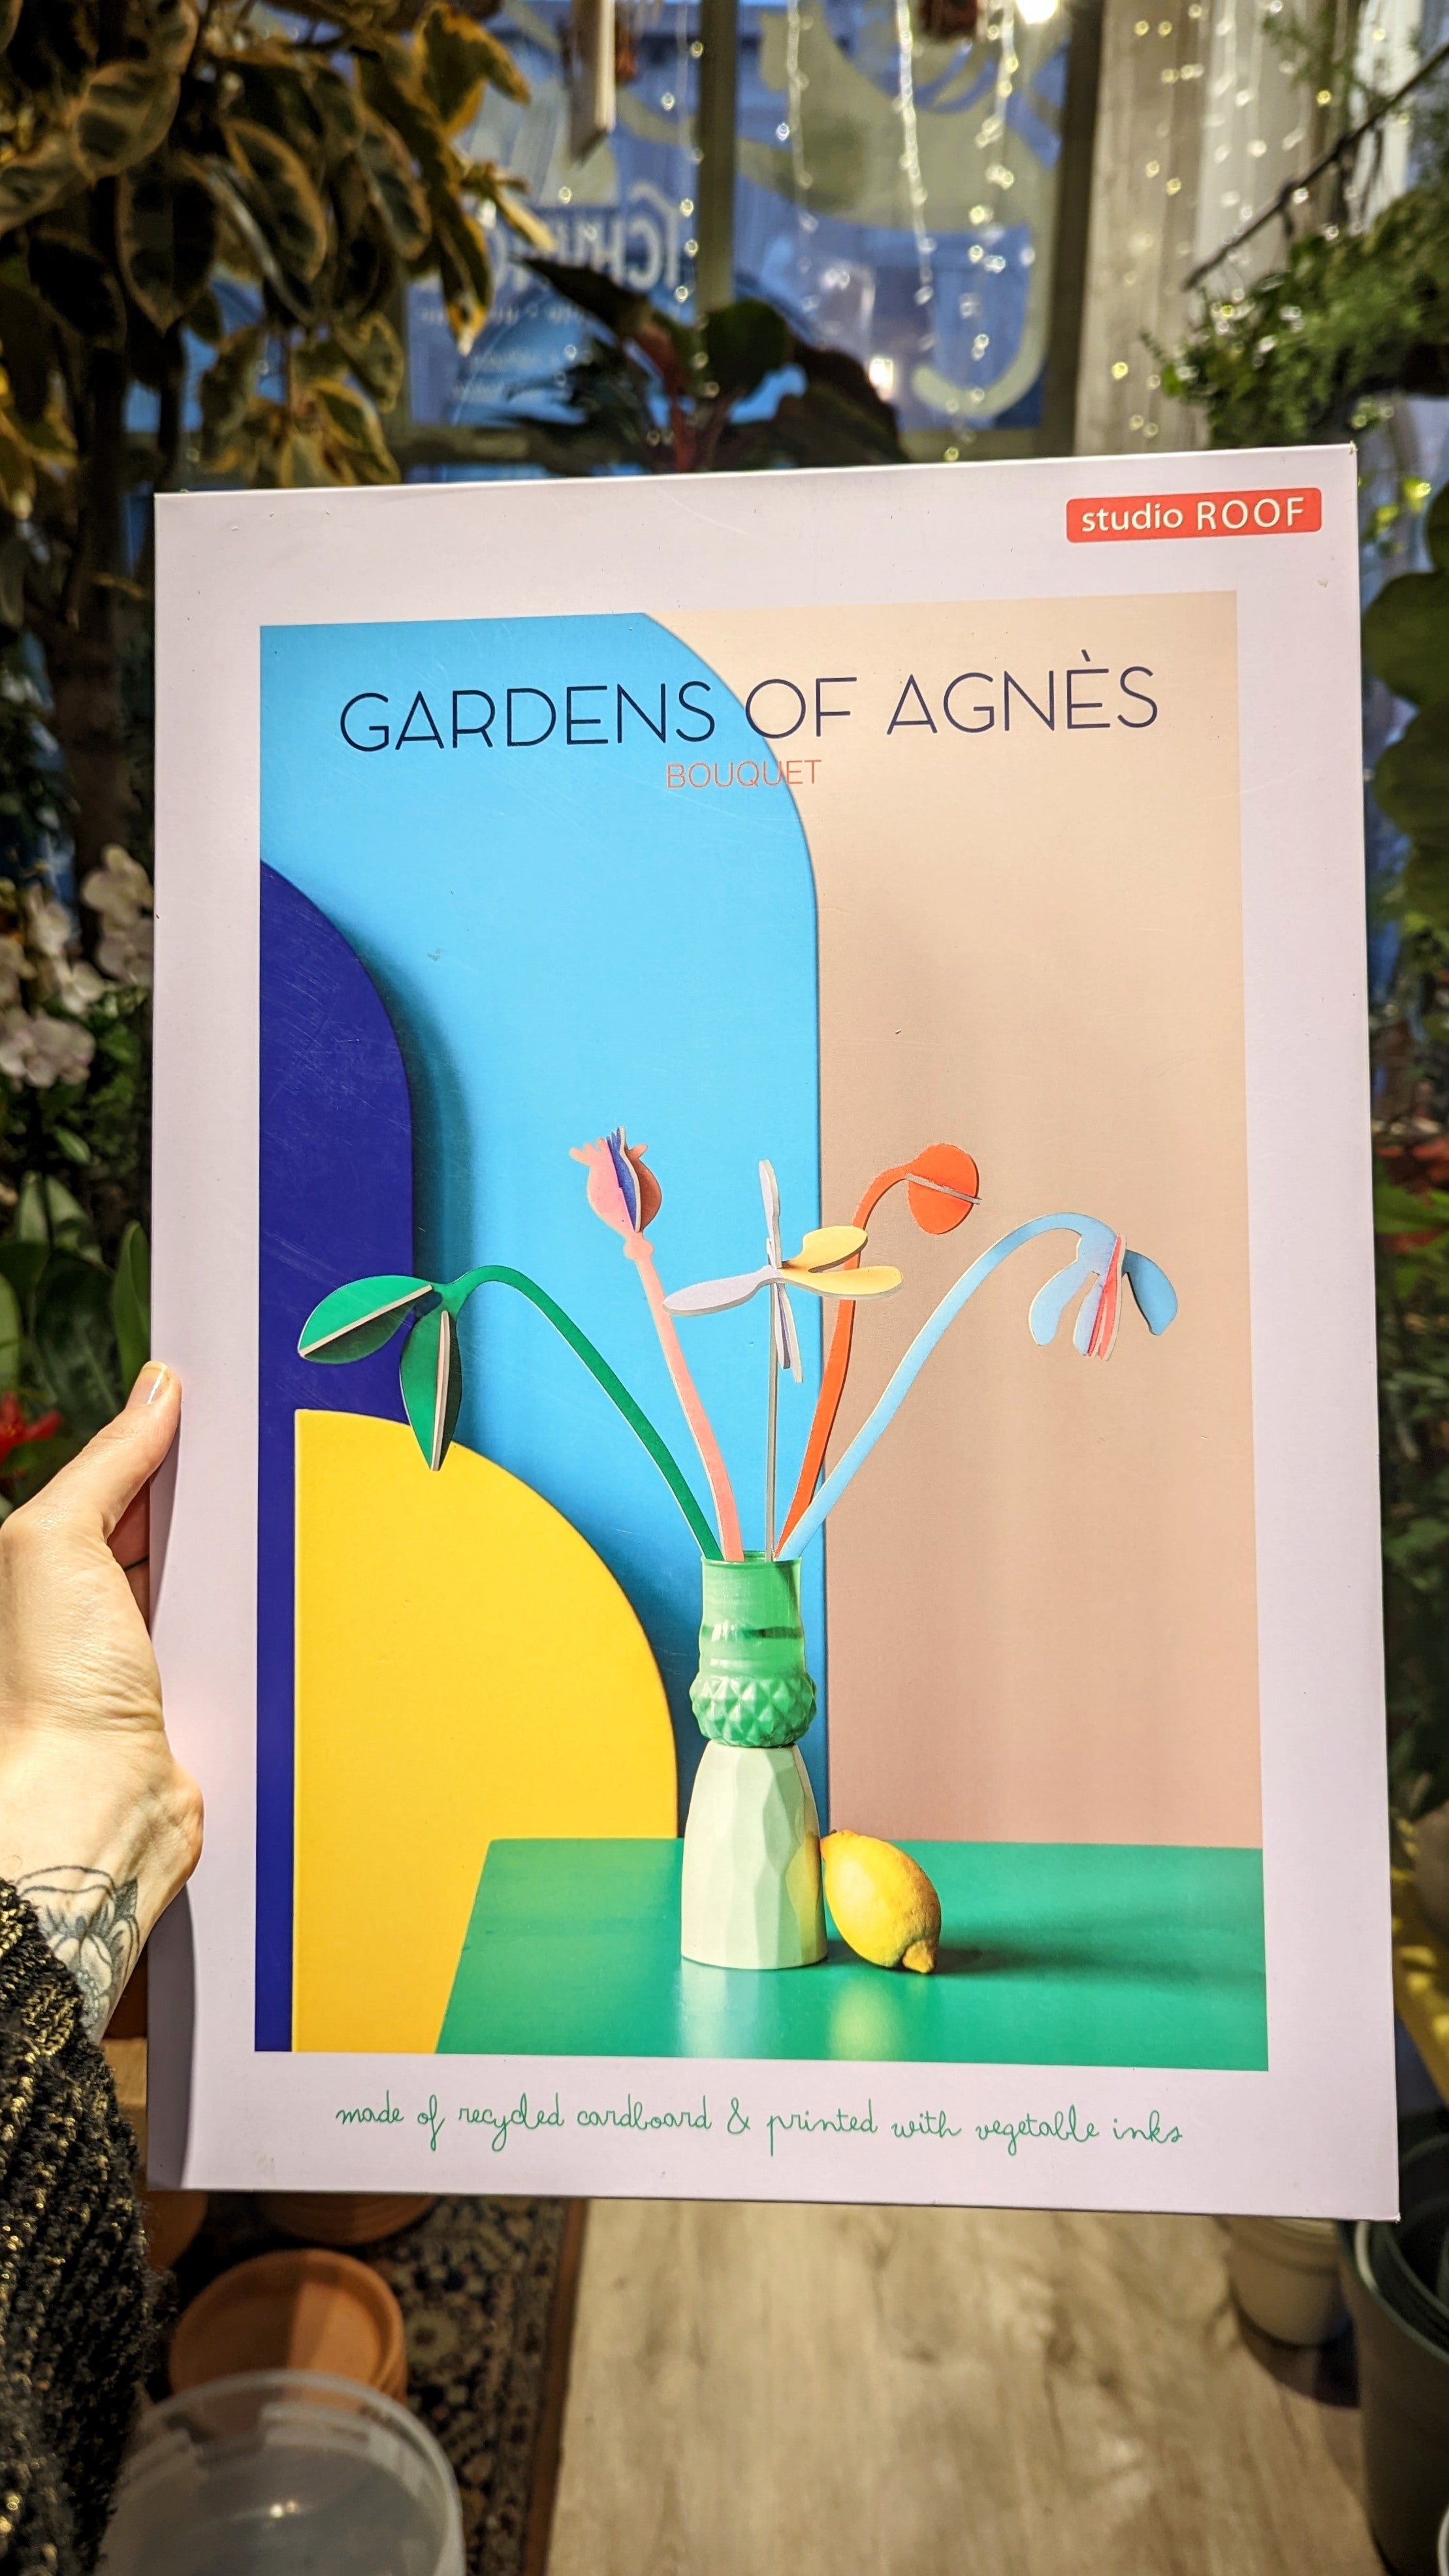 Roof Studio | Bouquet garden of Agnes